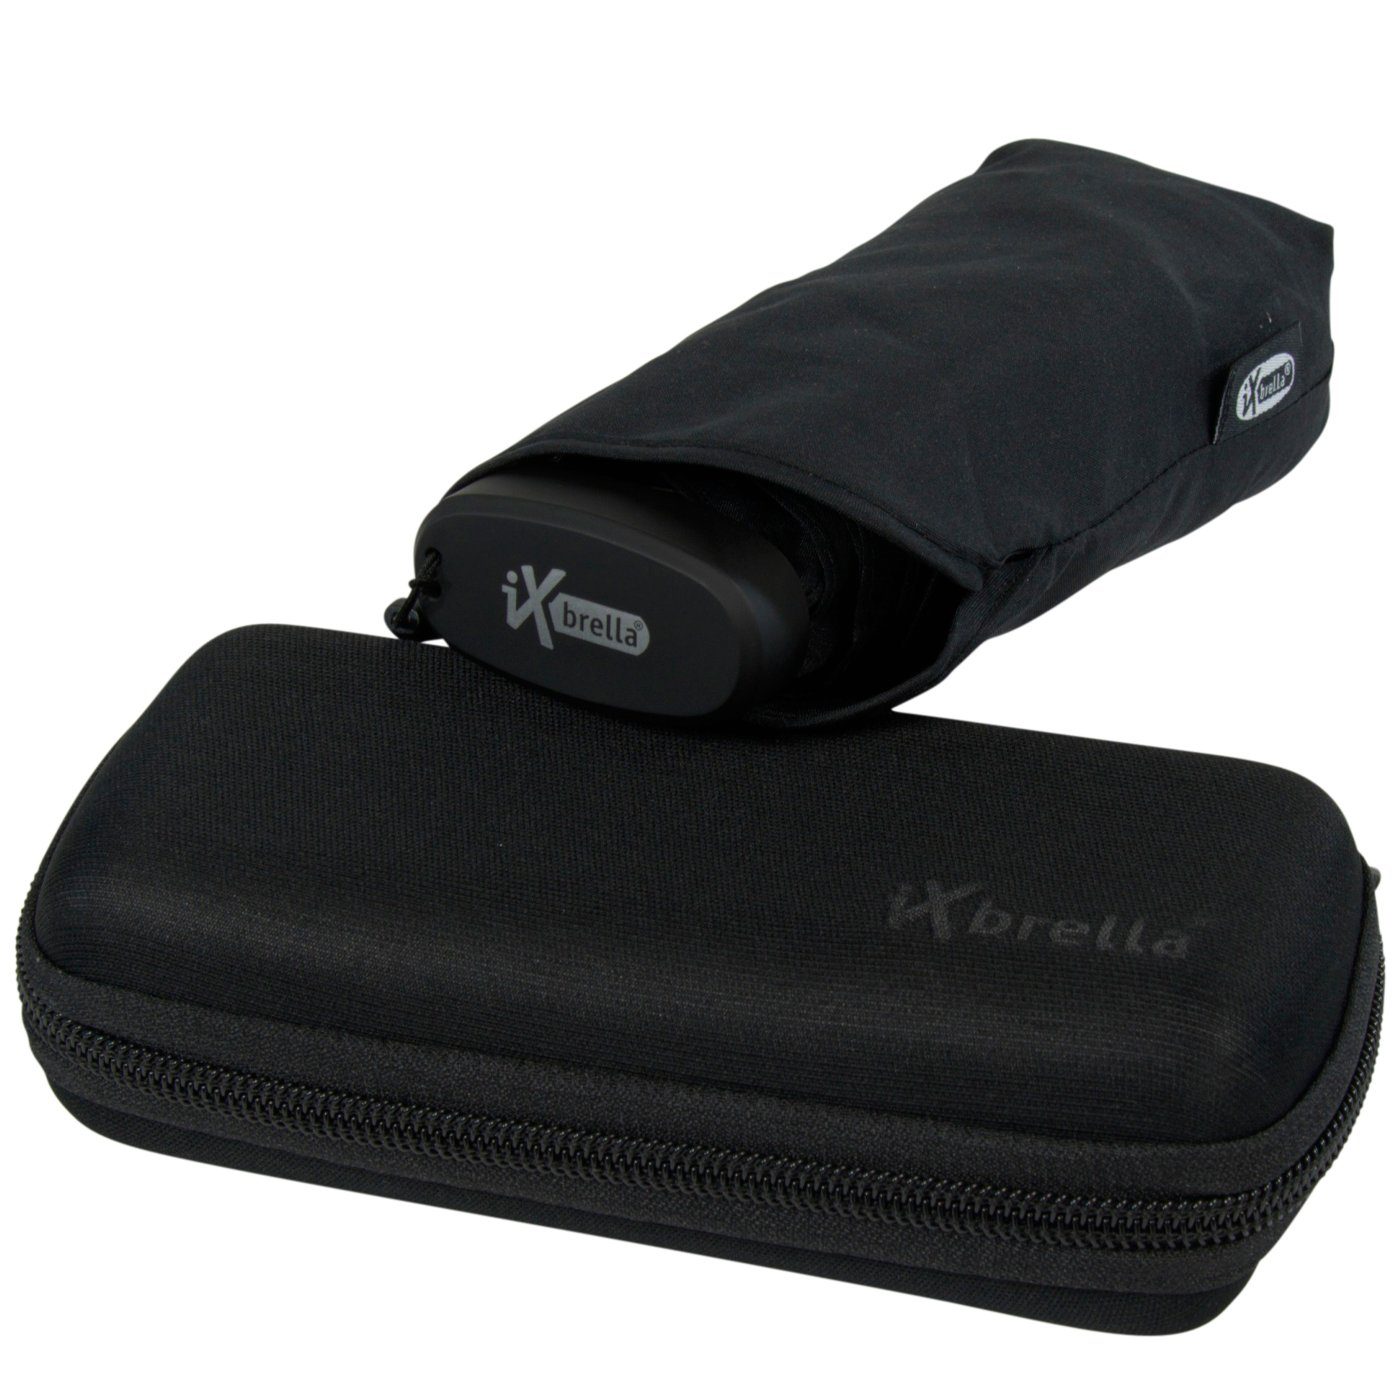 iX-brella Taschenregenschirm Ultra Mini 15 cm winziger Schirm im Handy Format, ultra-klein, mit Softcase-Etui - schwarz | Taschenschirme